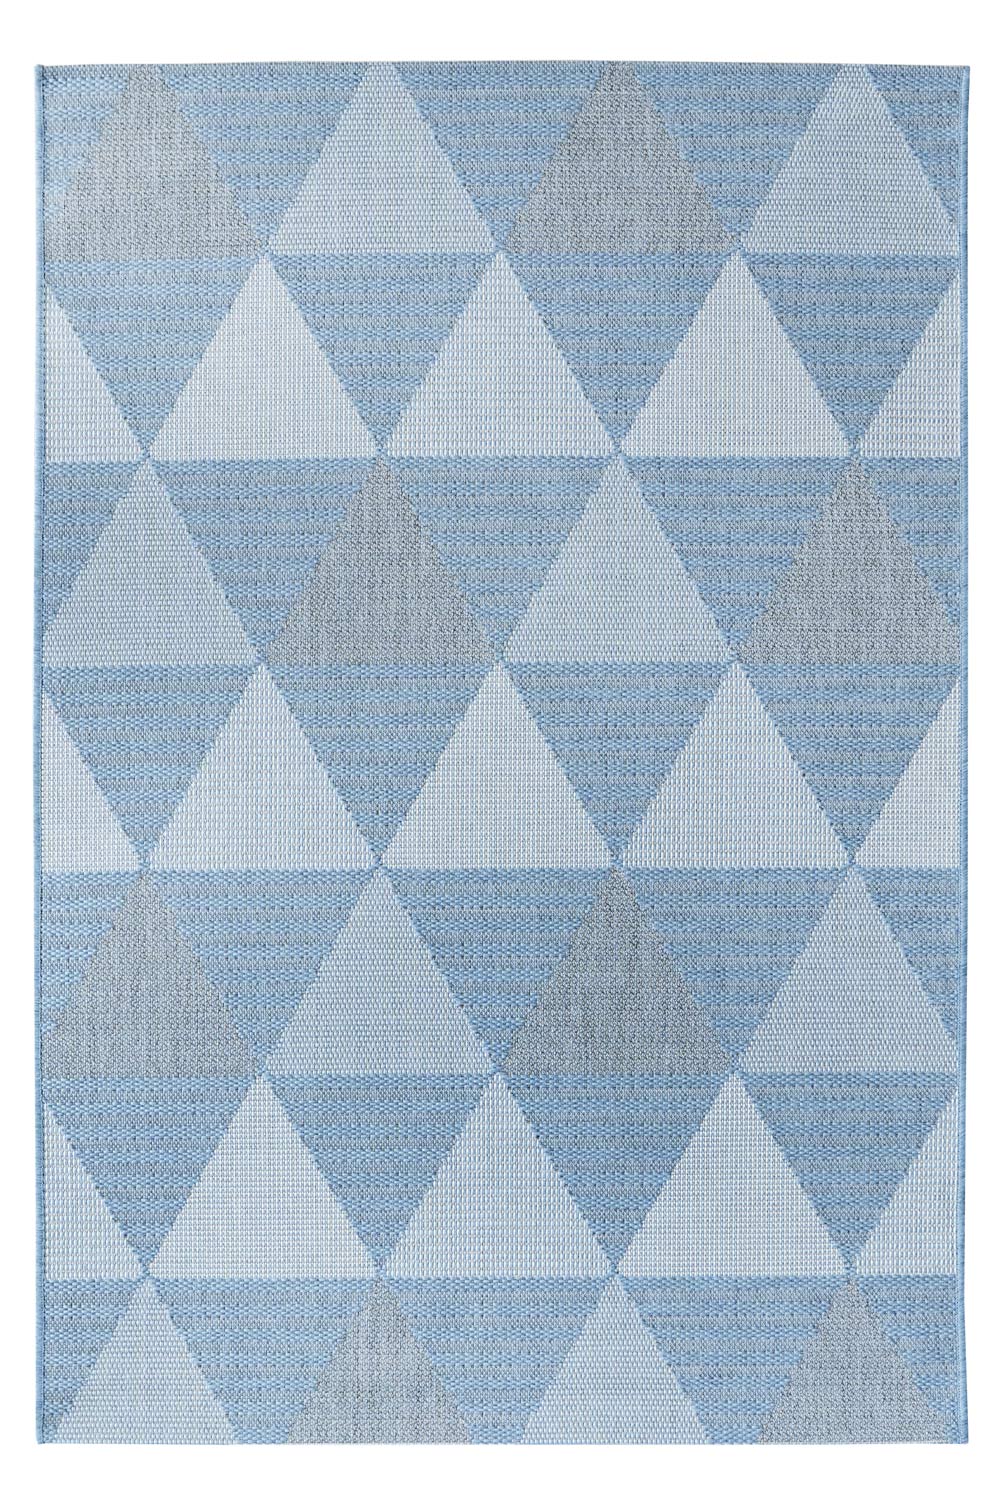 Kusový koberec Flat 21132 Ivory Silver/Light Blue 60x110 cm